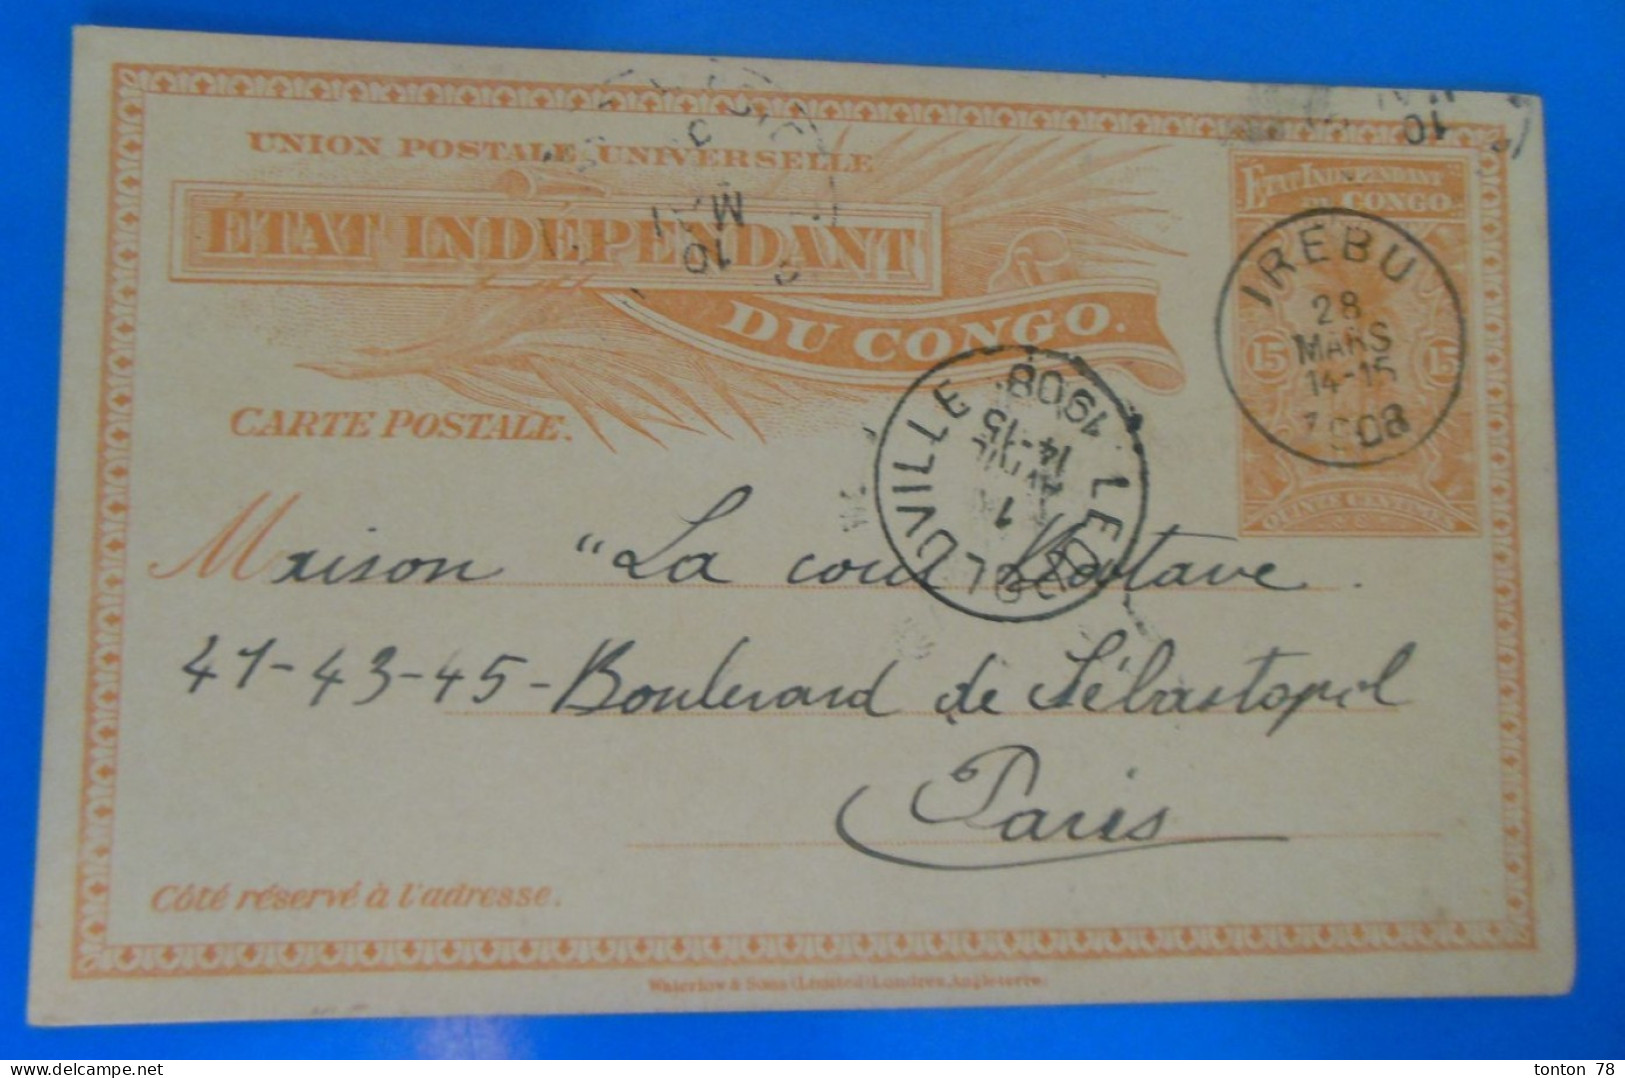 ENTIER POSTAL SUR CARTE  -  ETAT INDEPENDANT DU CONGO  1908 - Covers & Documents